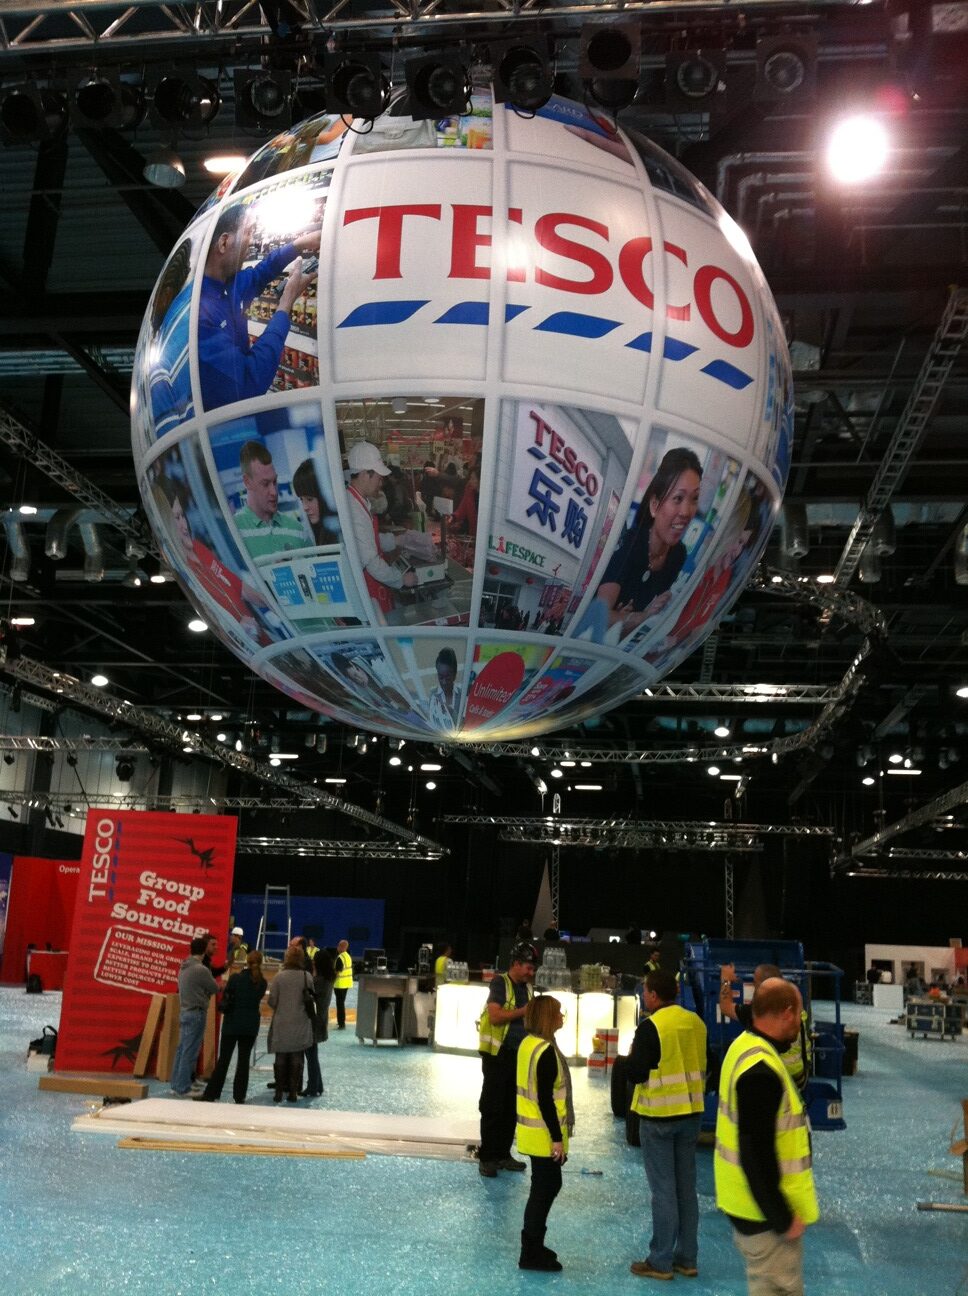 Tesco Giant sphere